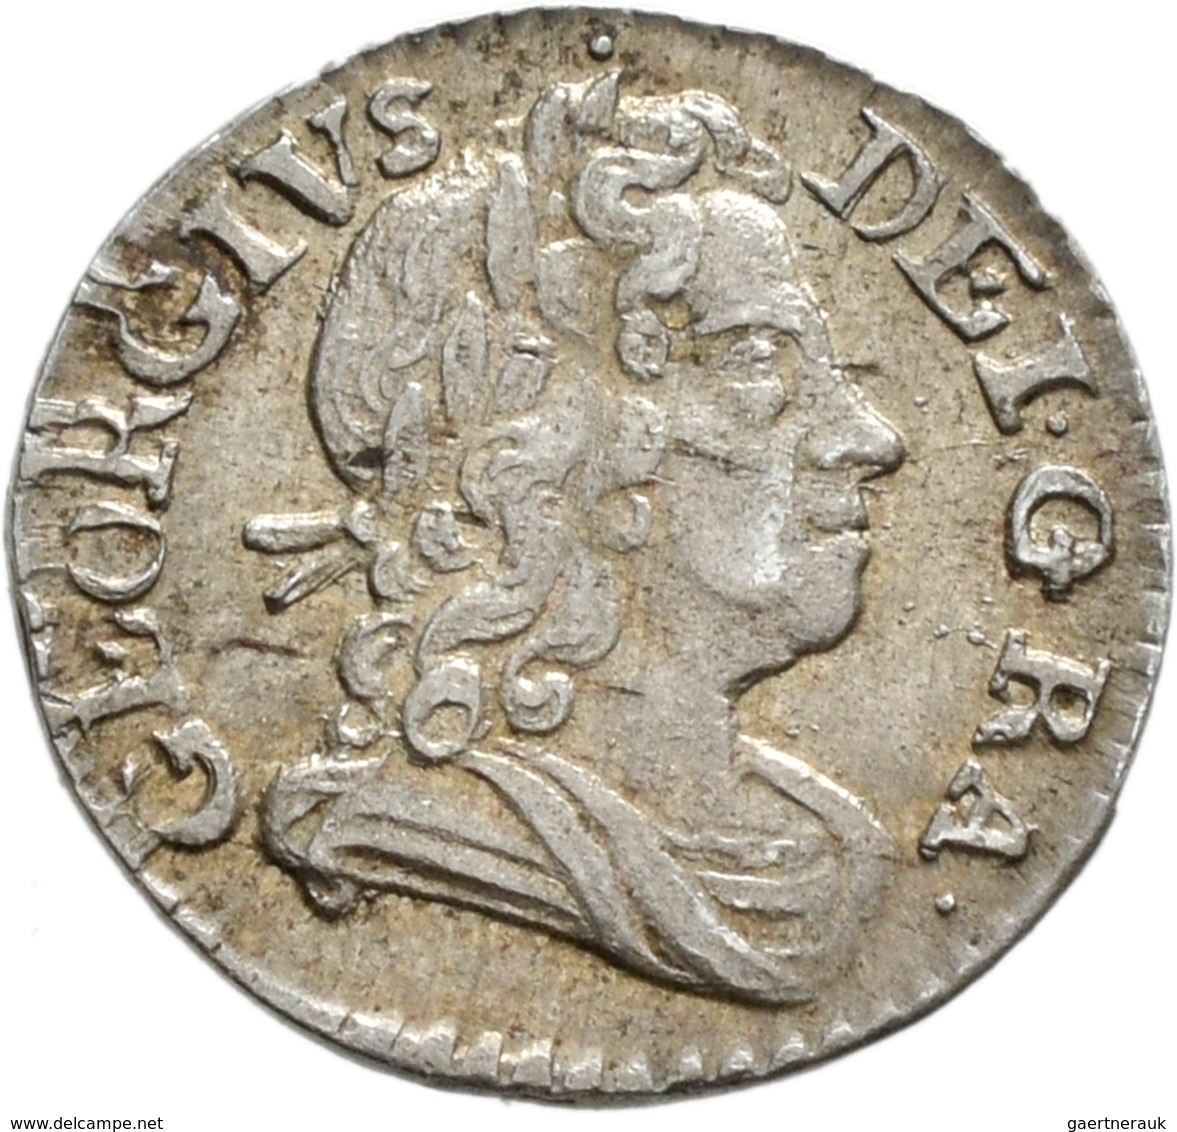 Großbritannien: Georg II. 1727-1760: Maundy Set 1,2,3,4 Pence 1727, sehr schön-vorzüglich.